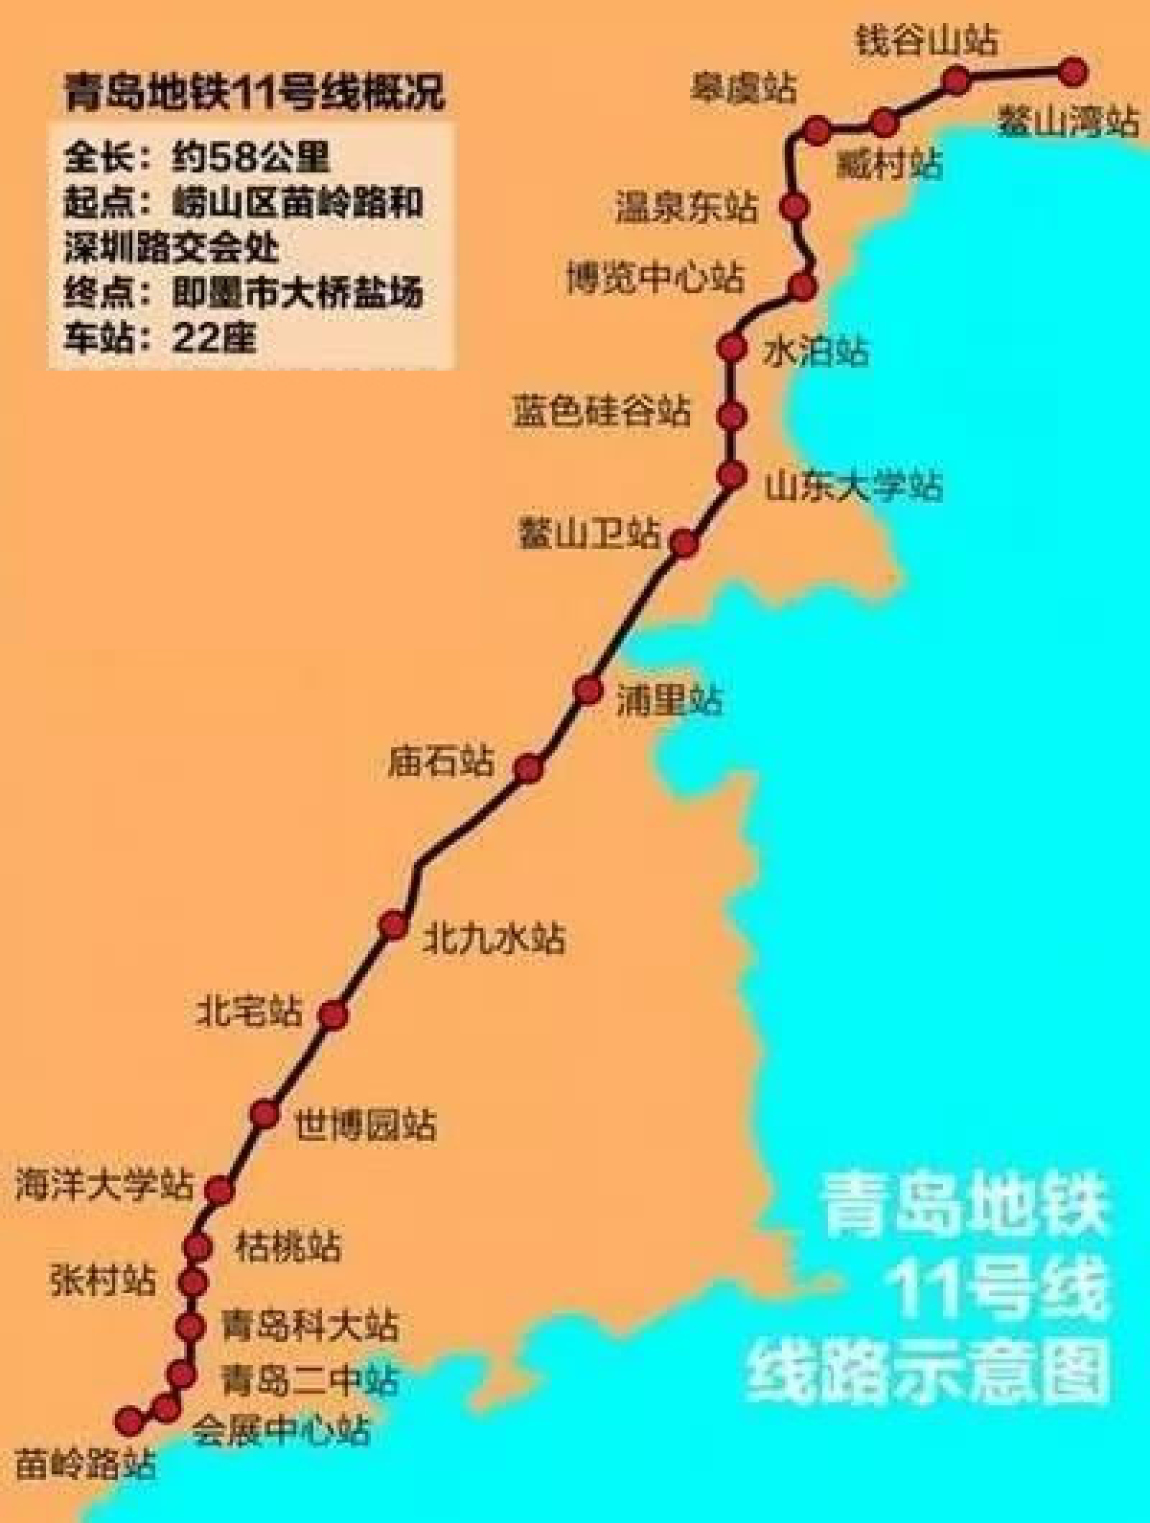 另外,根据青岛地铁官网公示,青岛地铁将在2018年全力推进8号线建设